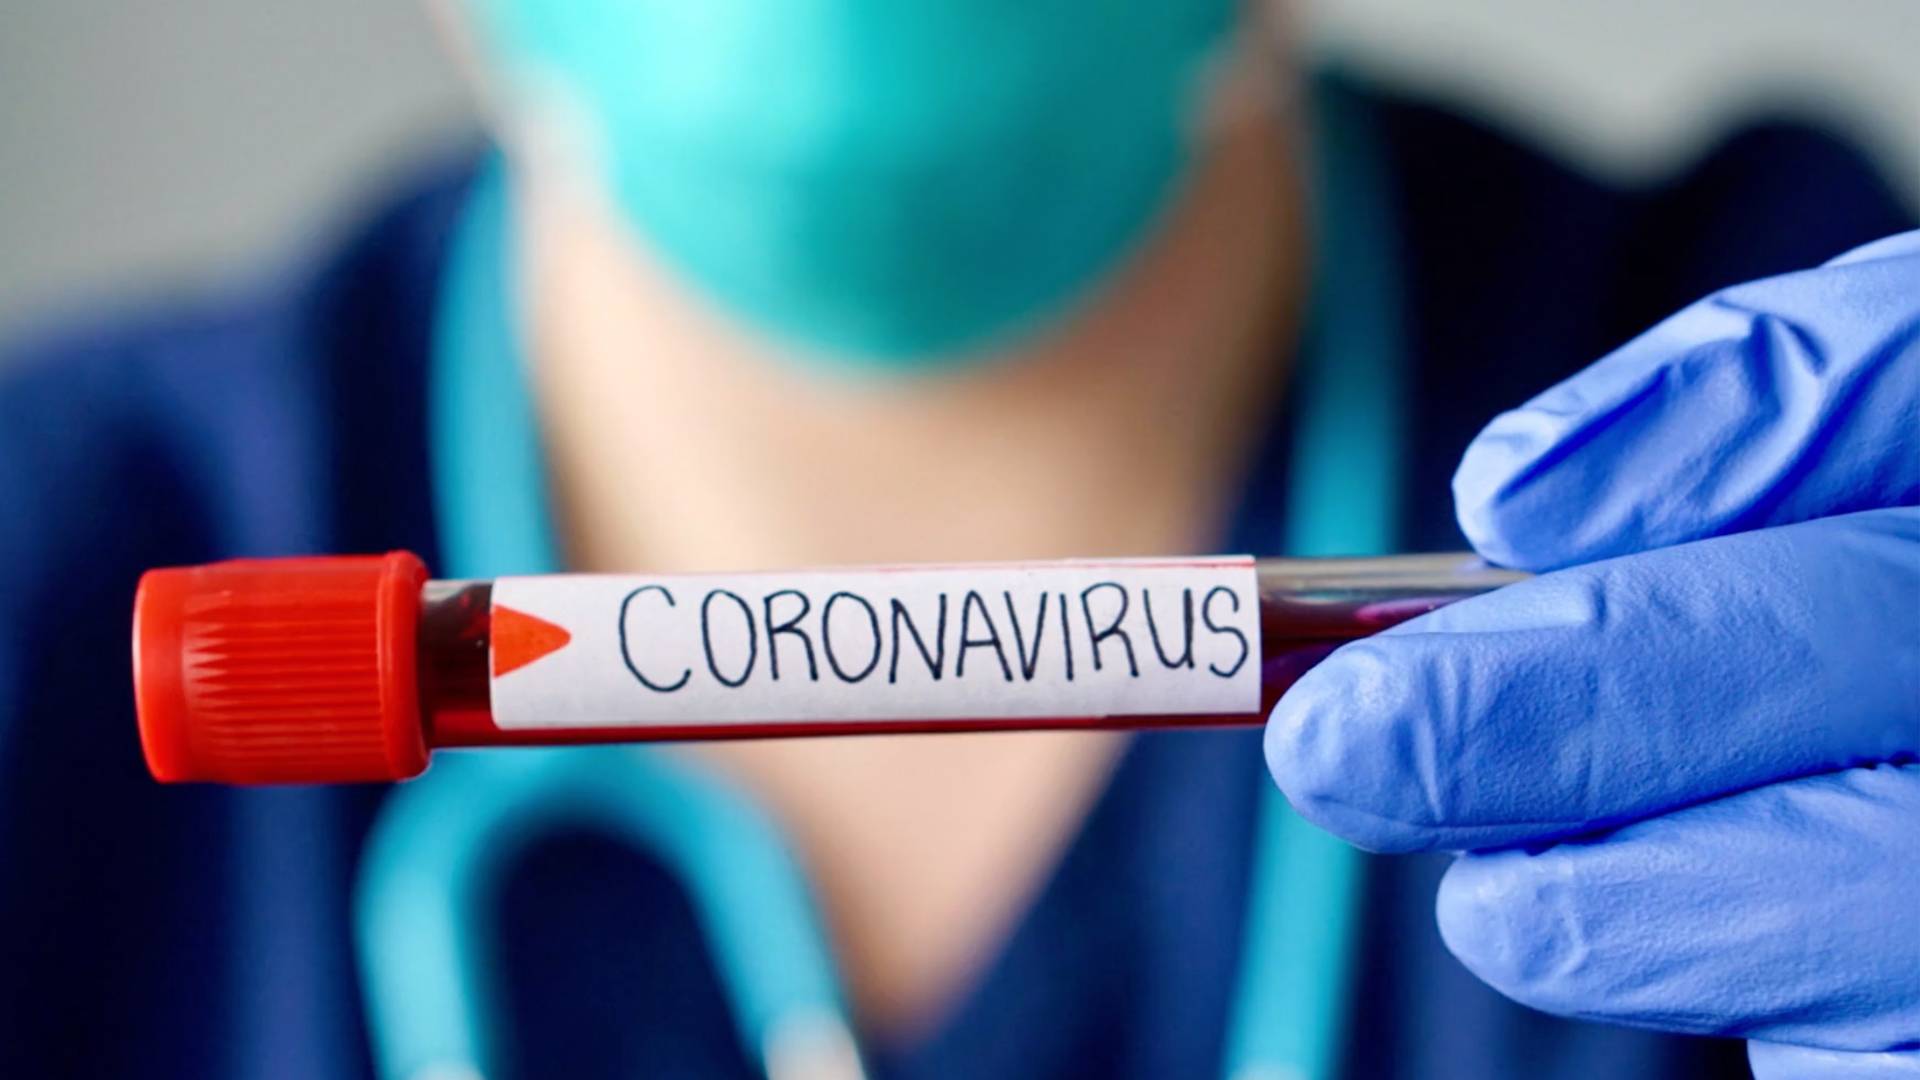 Coronavirus test tube on BET BUZZ 2020.